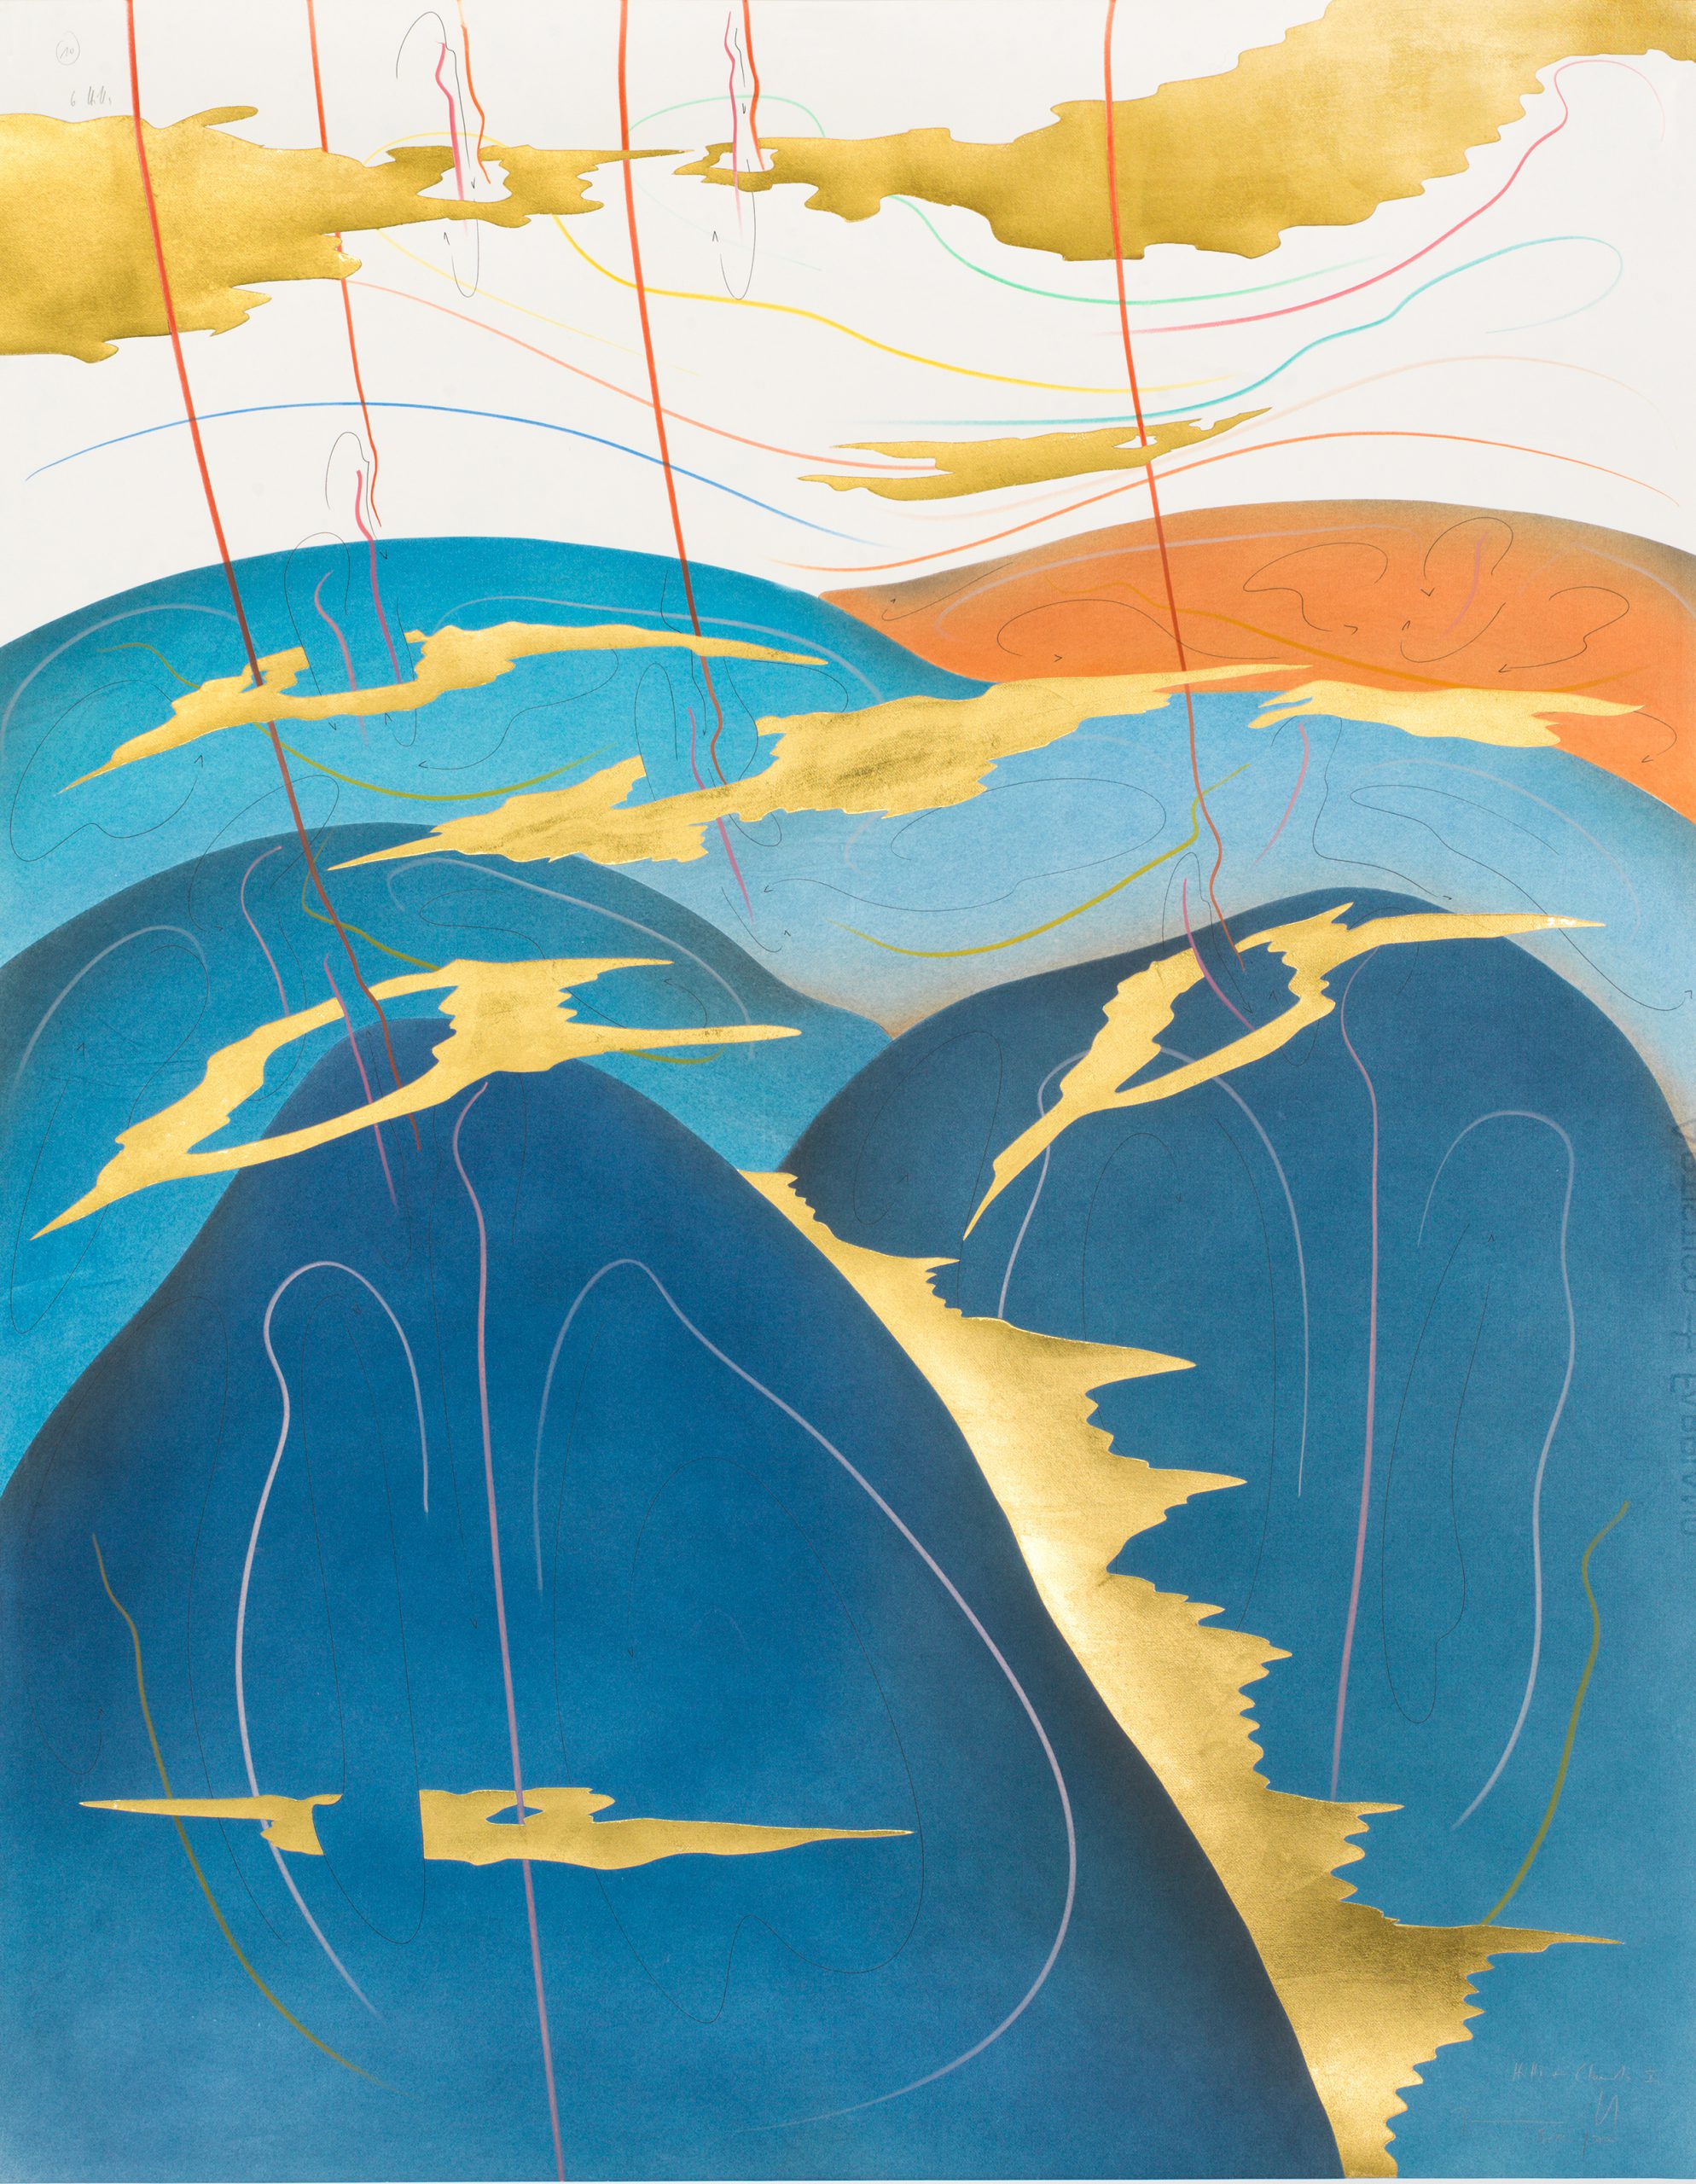 Hills+Clouds X Berlin 2017 88 x 69 cm Tinte, Blattgold, Pastell, Ölkreide, Graphit auf Papier, Unikat, Signiert Ink, gold leaf, pastels, oil chalks, graphite on paper, unique work, signed WV 2017-181